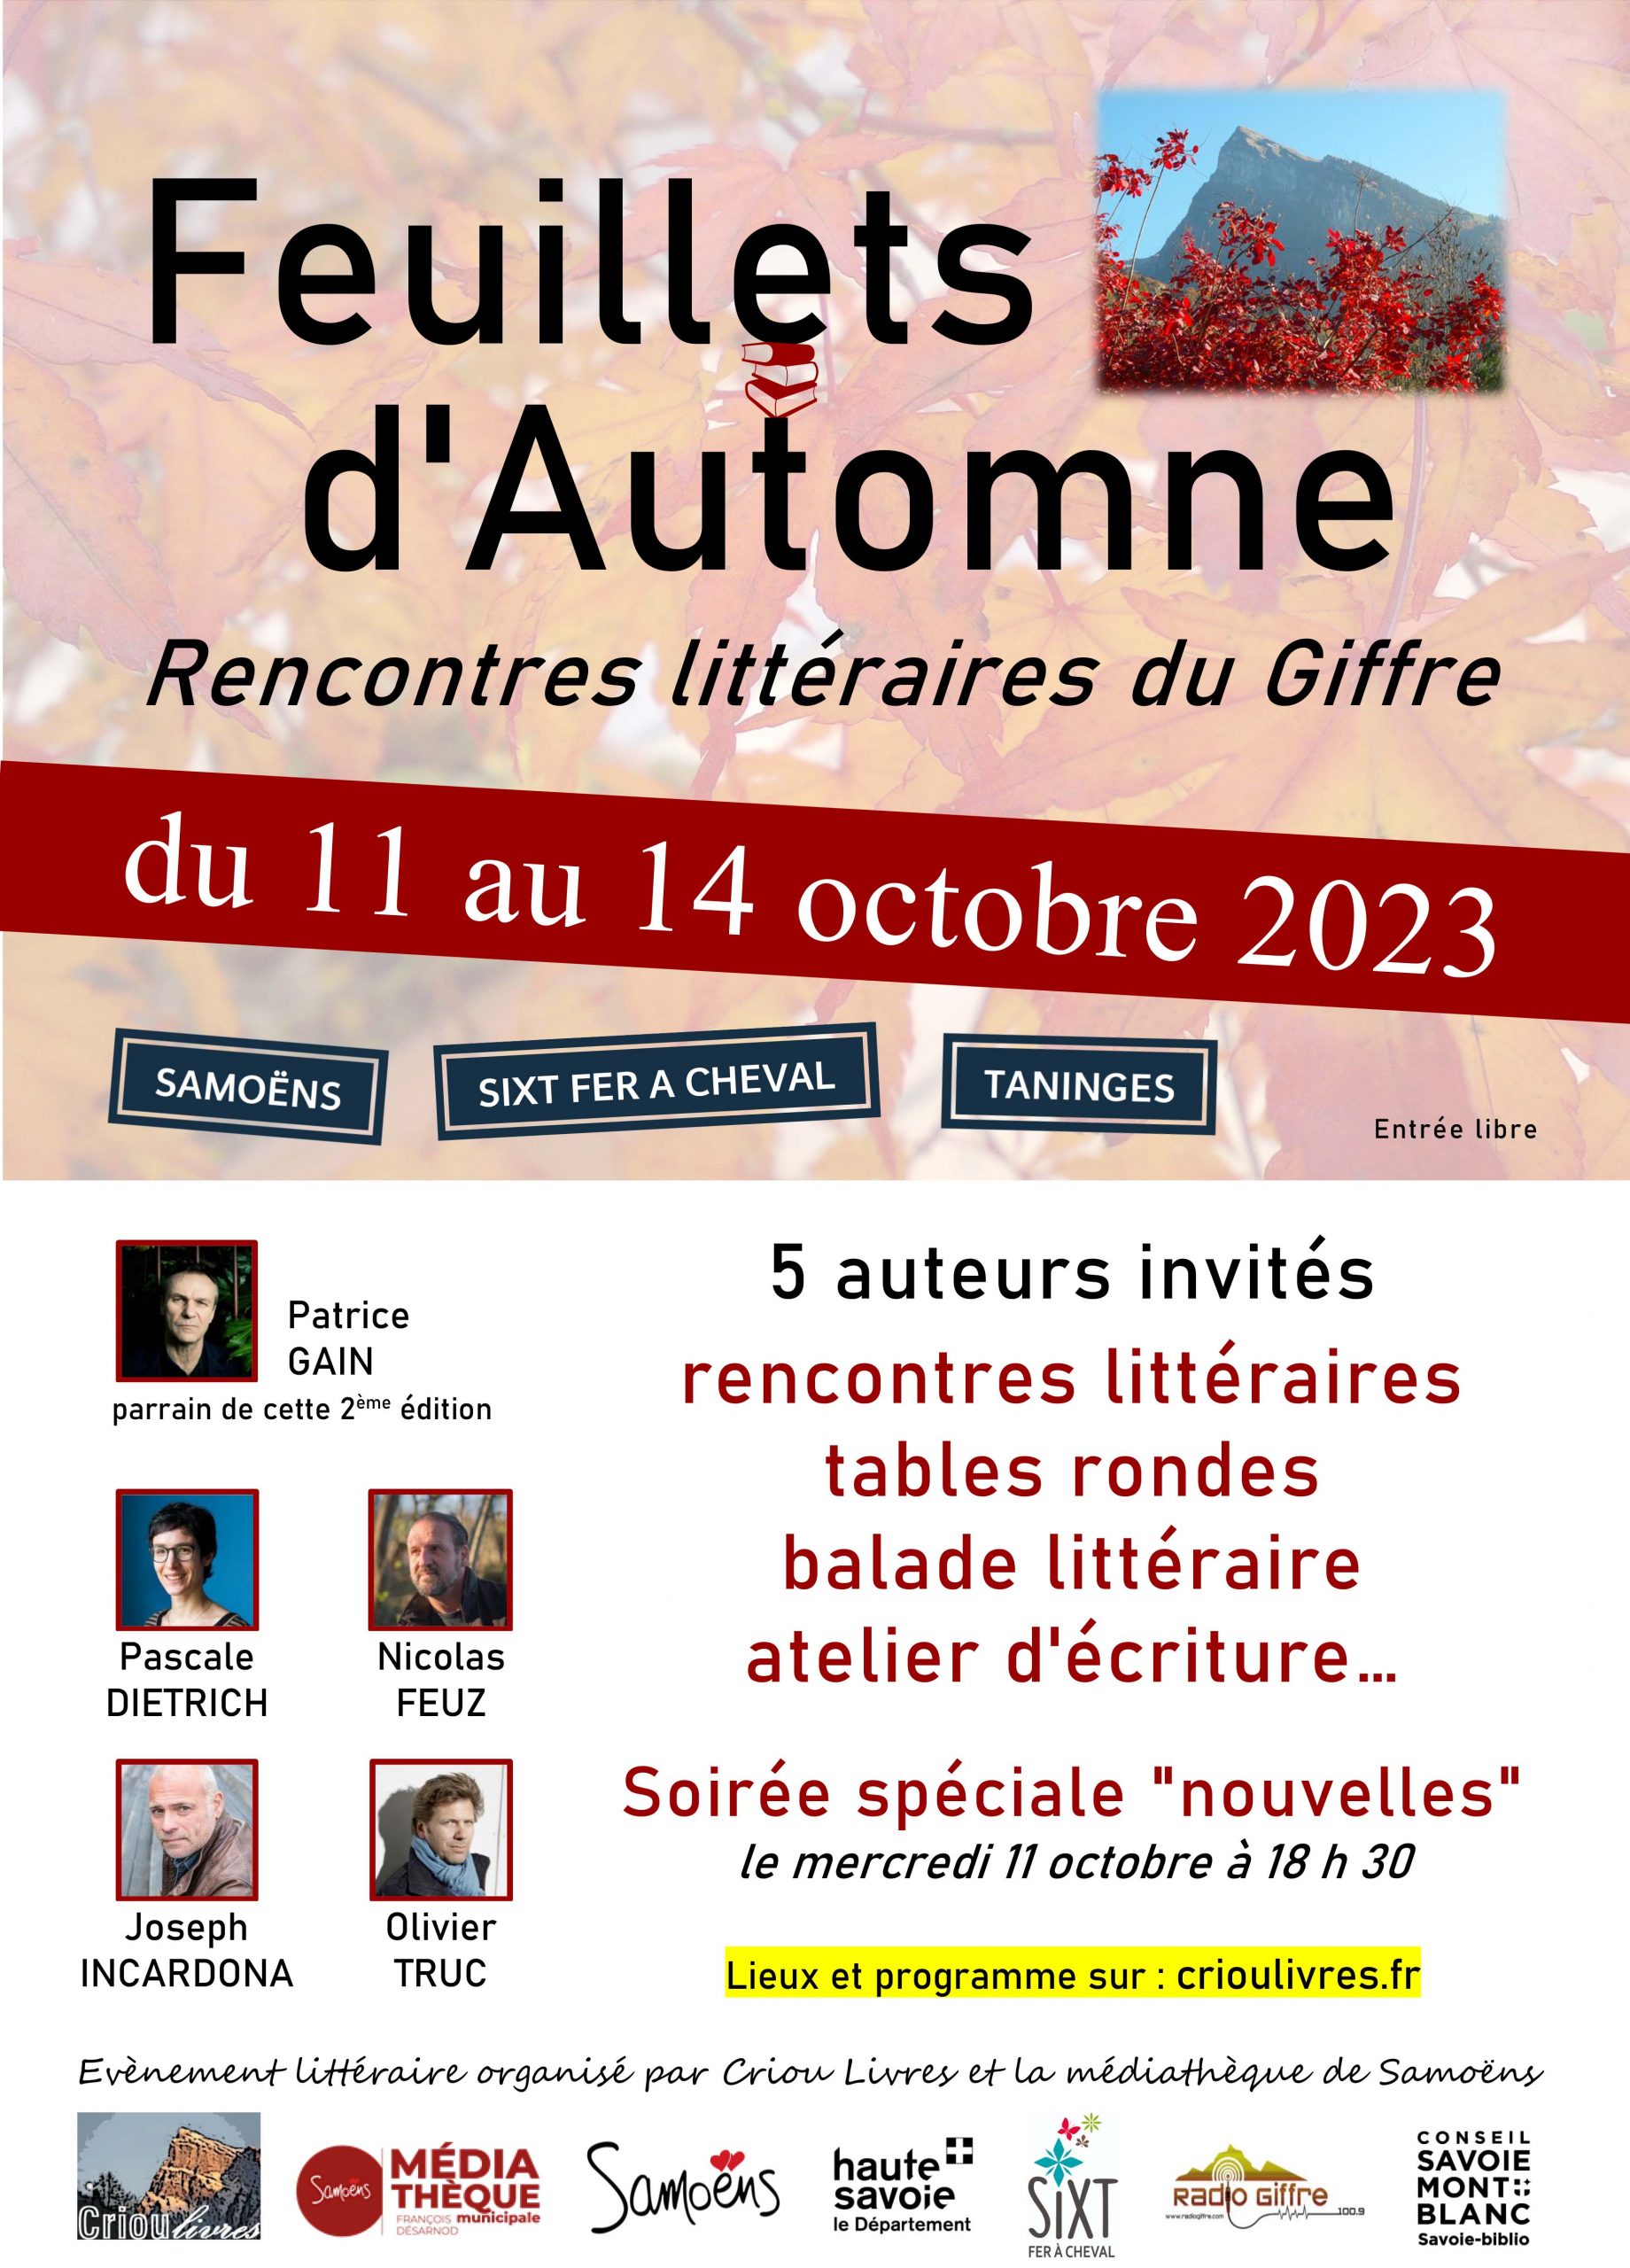 Feuillets d’automne : Rencontres littéraires du Giffre du 11 au 14 octobre 2023